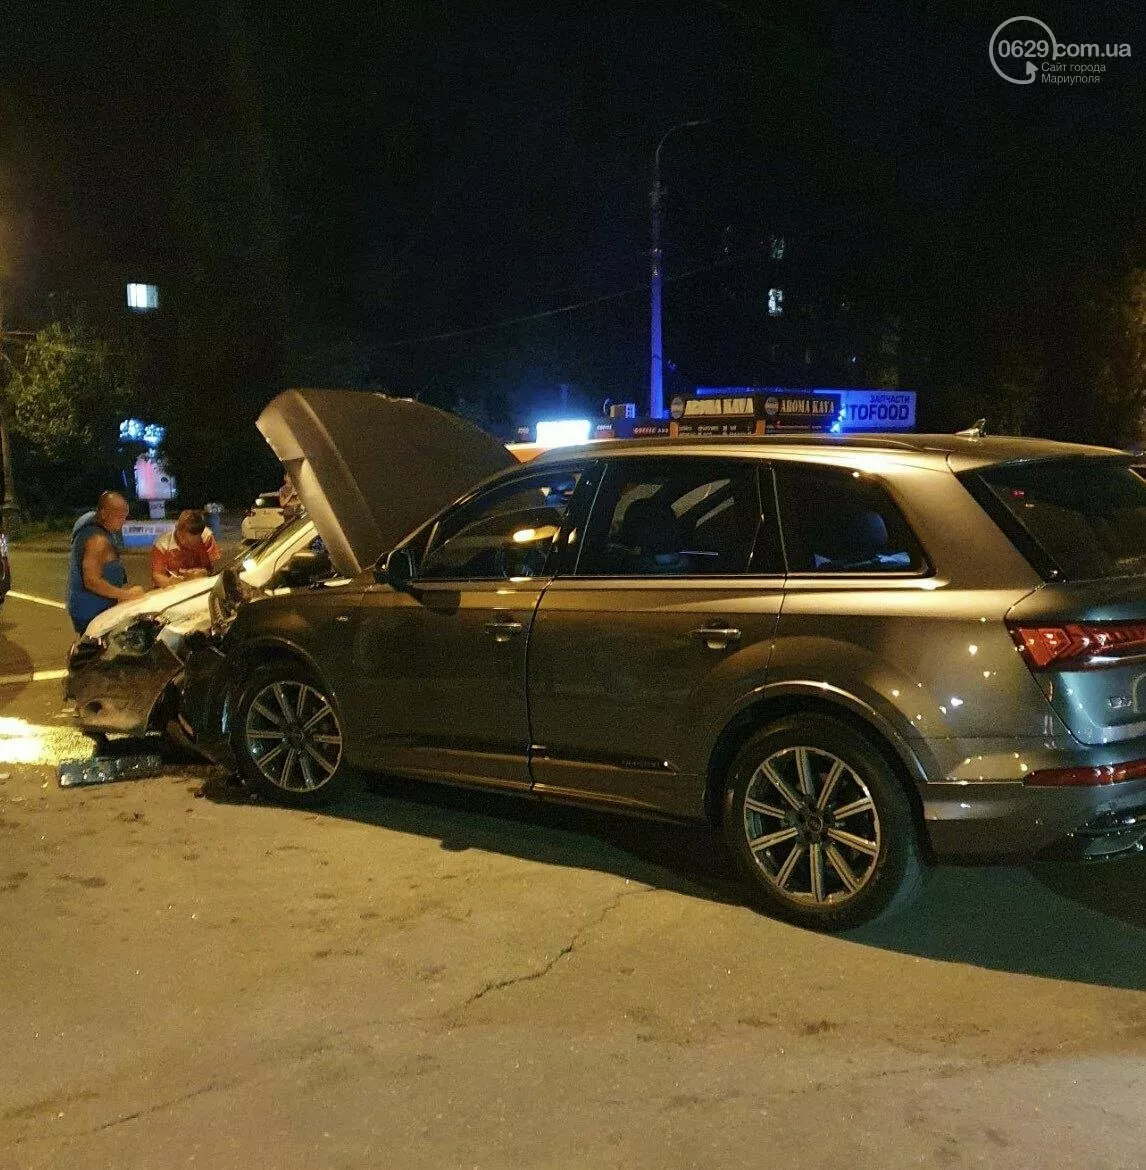 Аварія в Маріуполі з авто "Нової пошти", фото: 0629